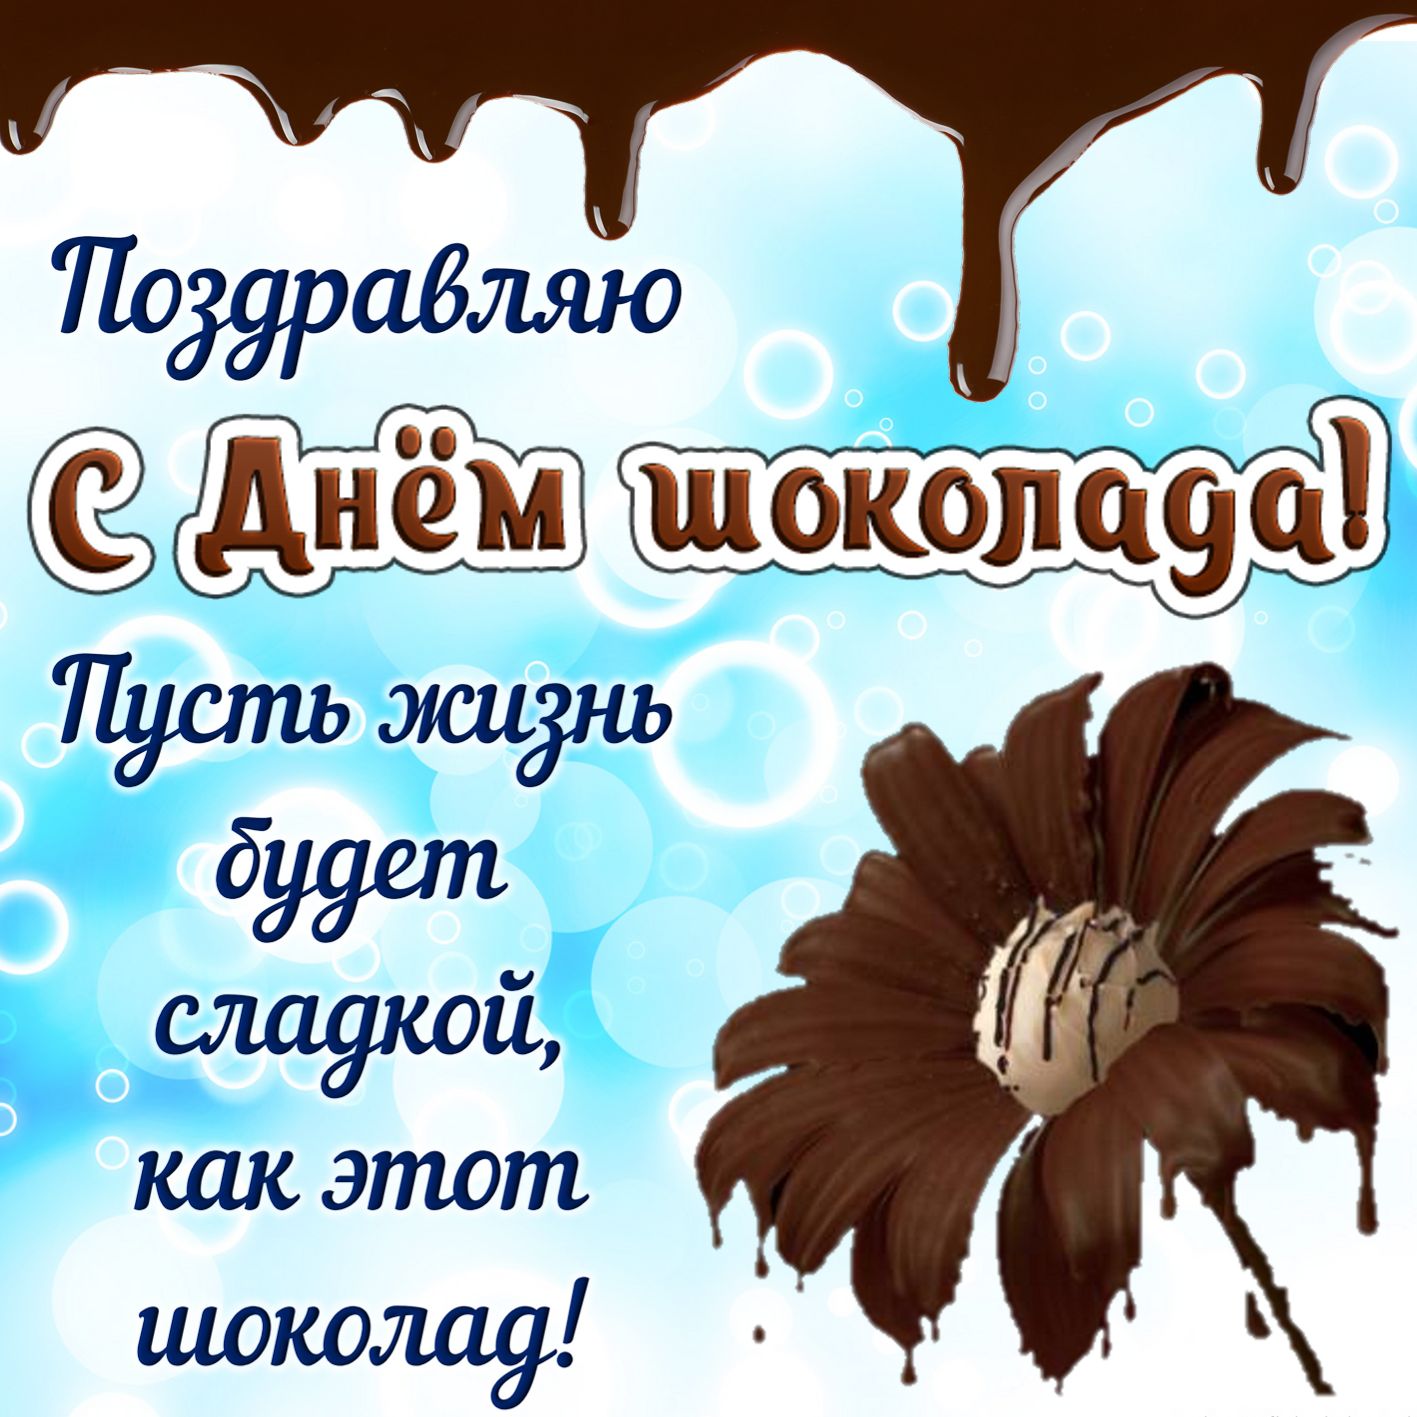 11 июля праздник Всемирный ДЕНЬ ШОКОЛАДА - Красивые стихи поздравления с Днем шоколада - Открытки ко Дню шоколада с шоколадками бесплатно